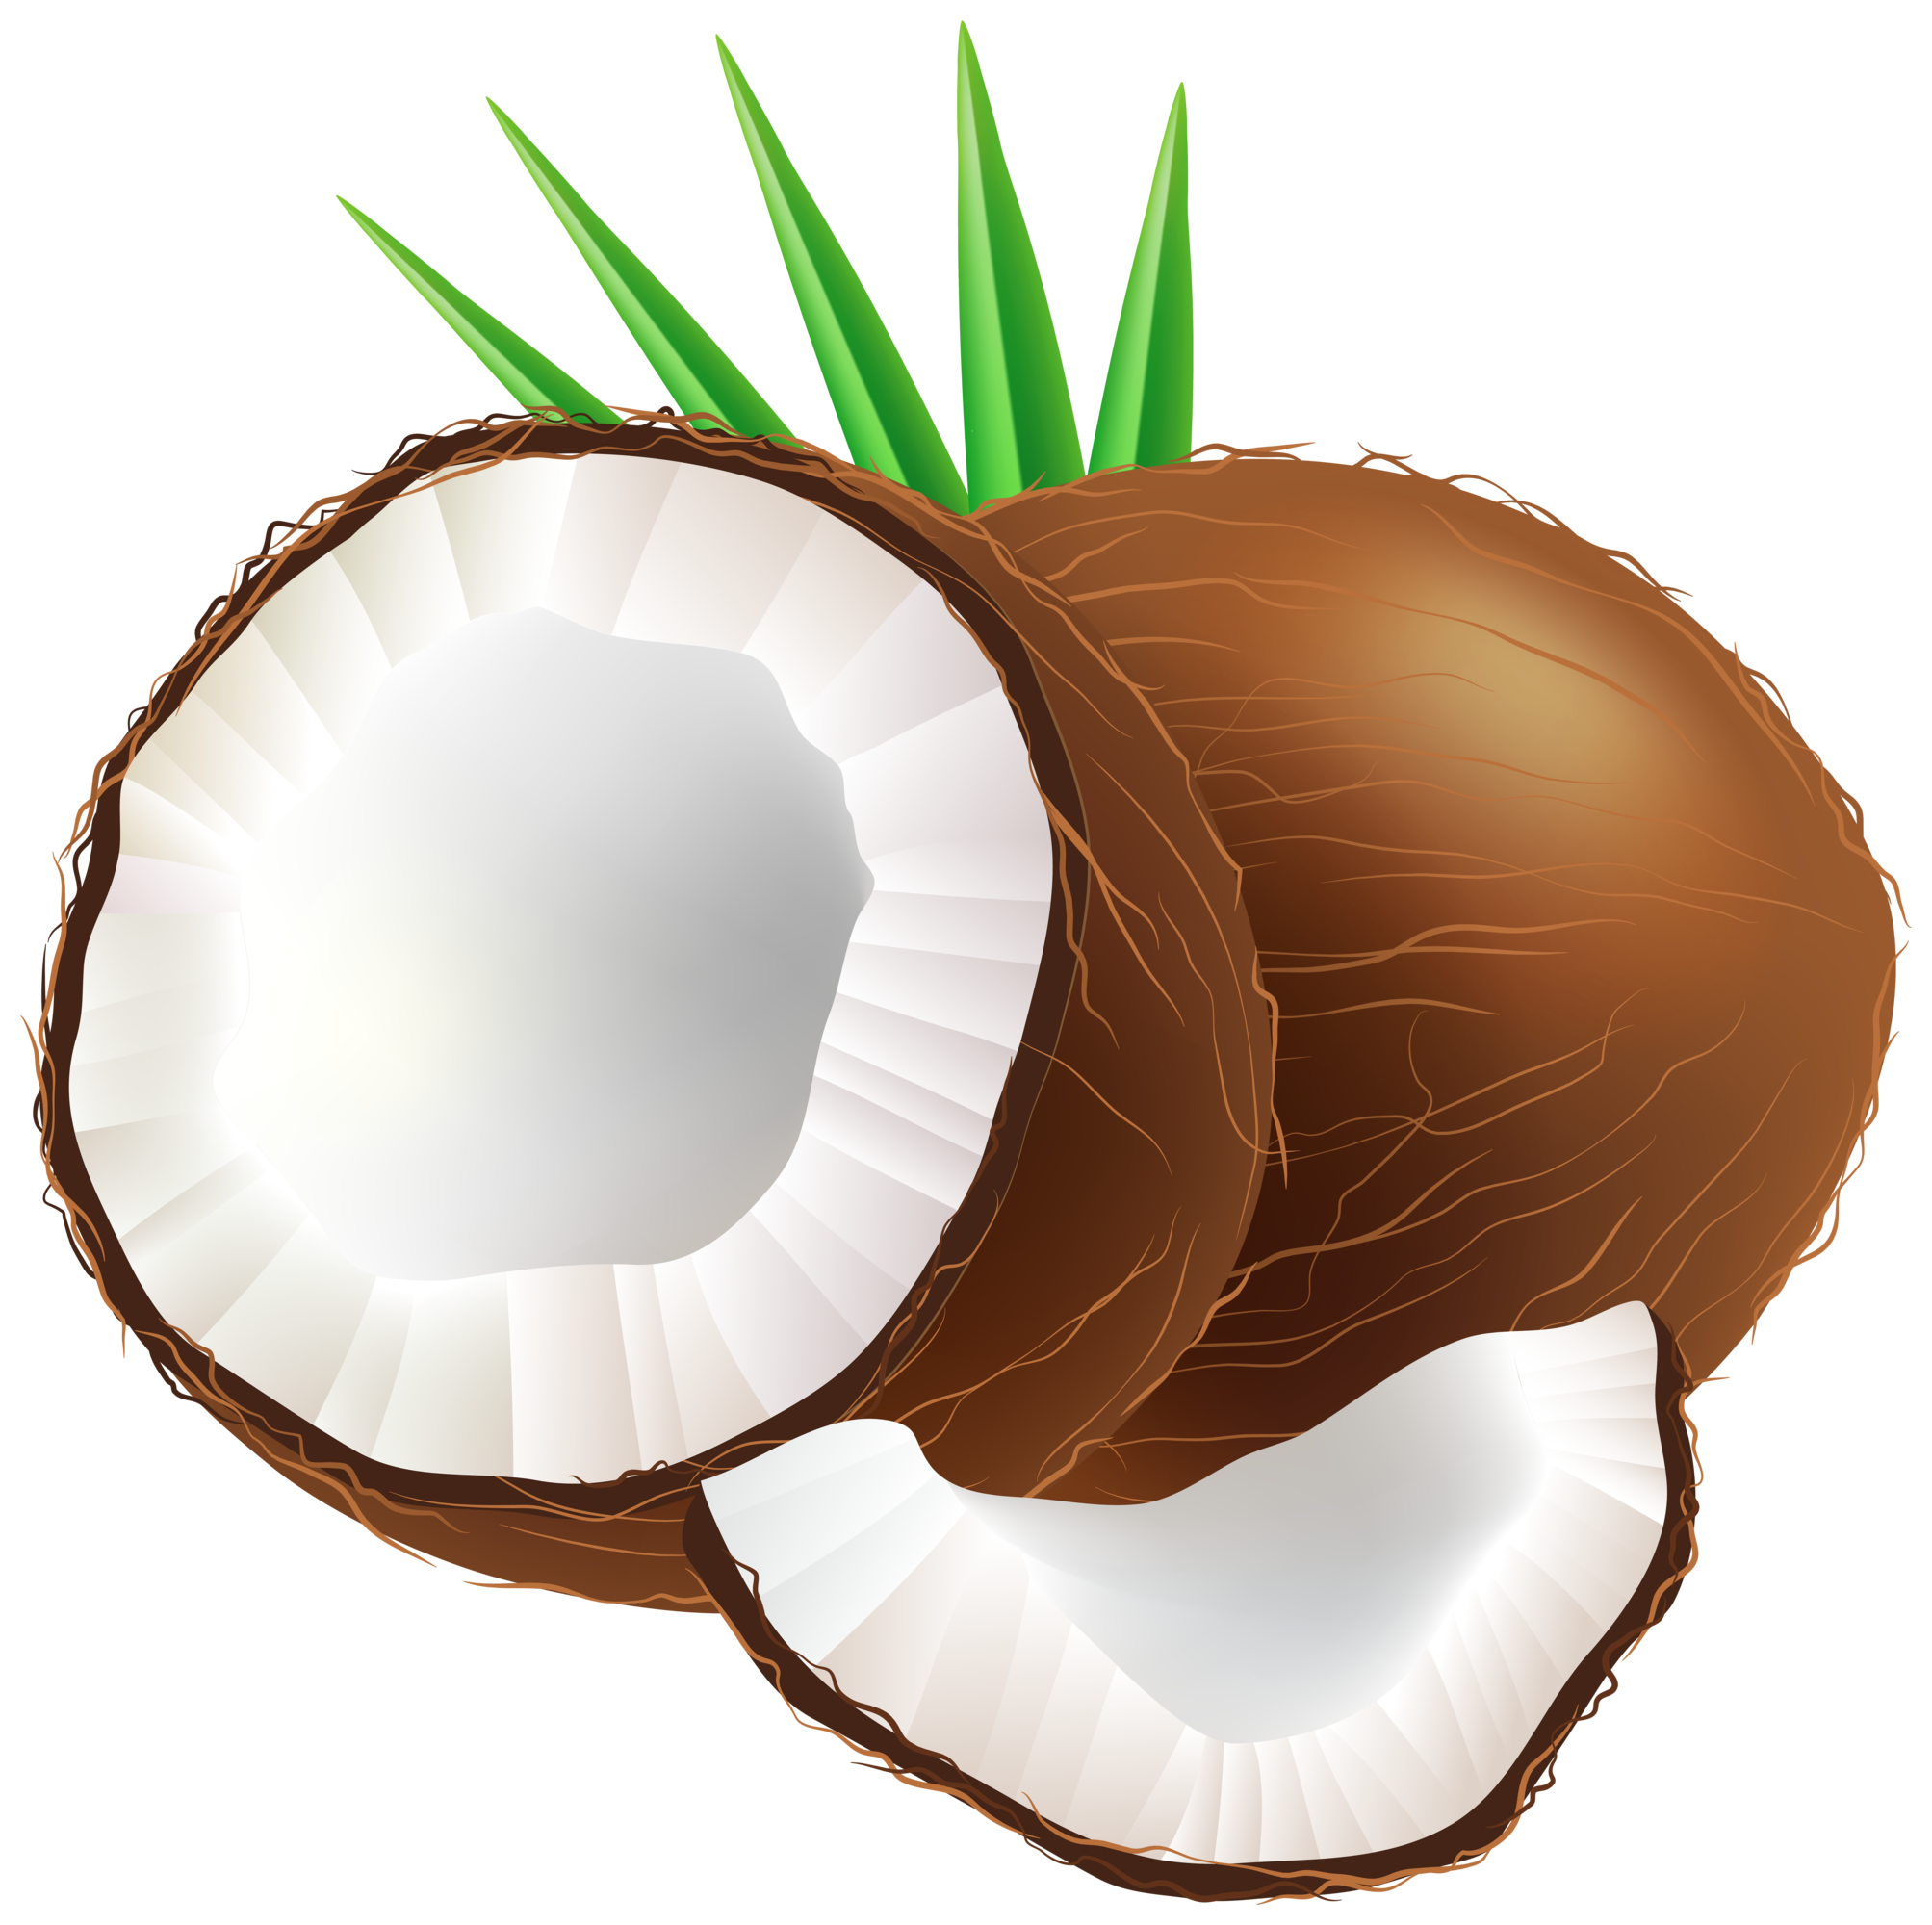 Cut coconut, Cut, Half, Cocon